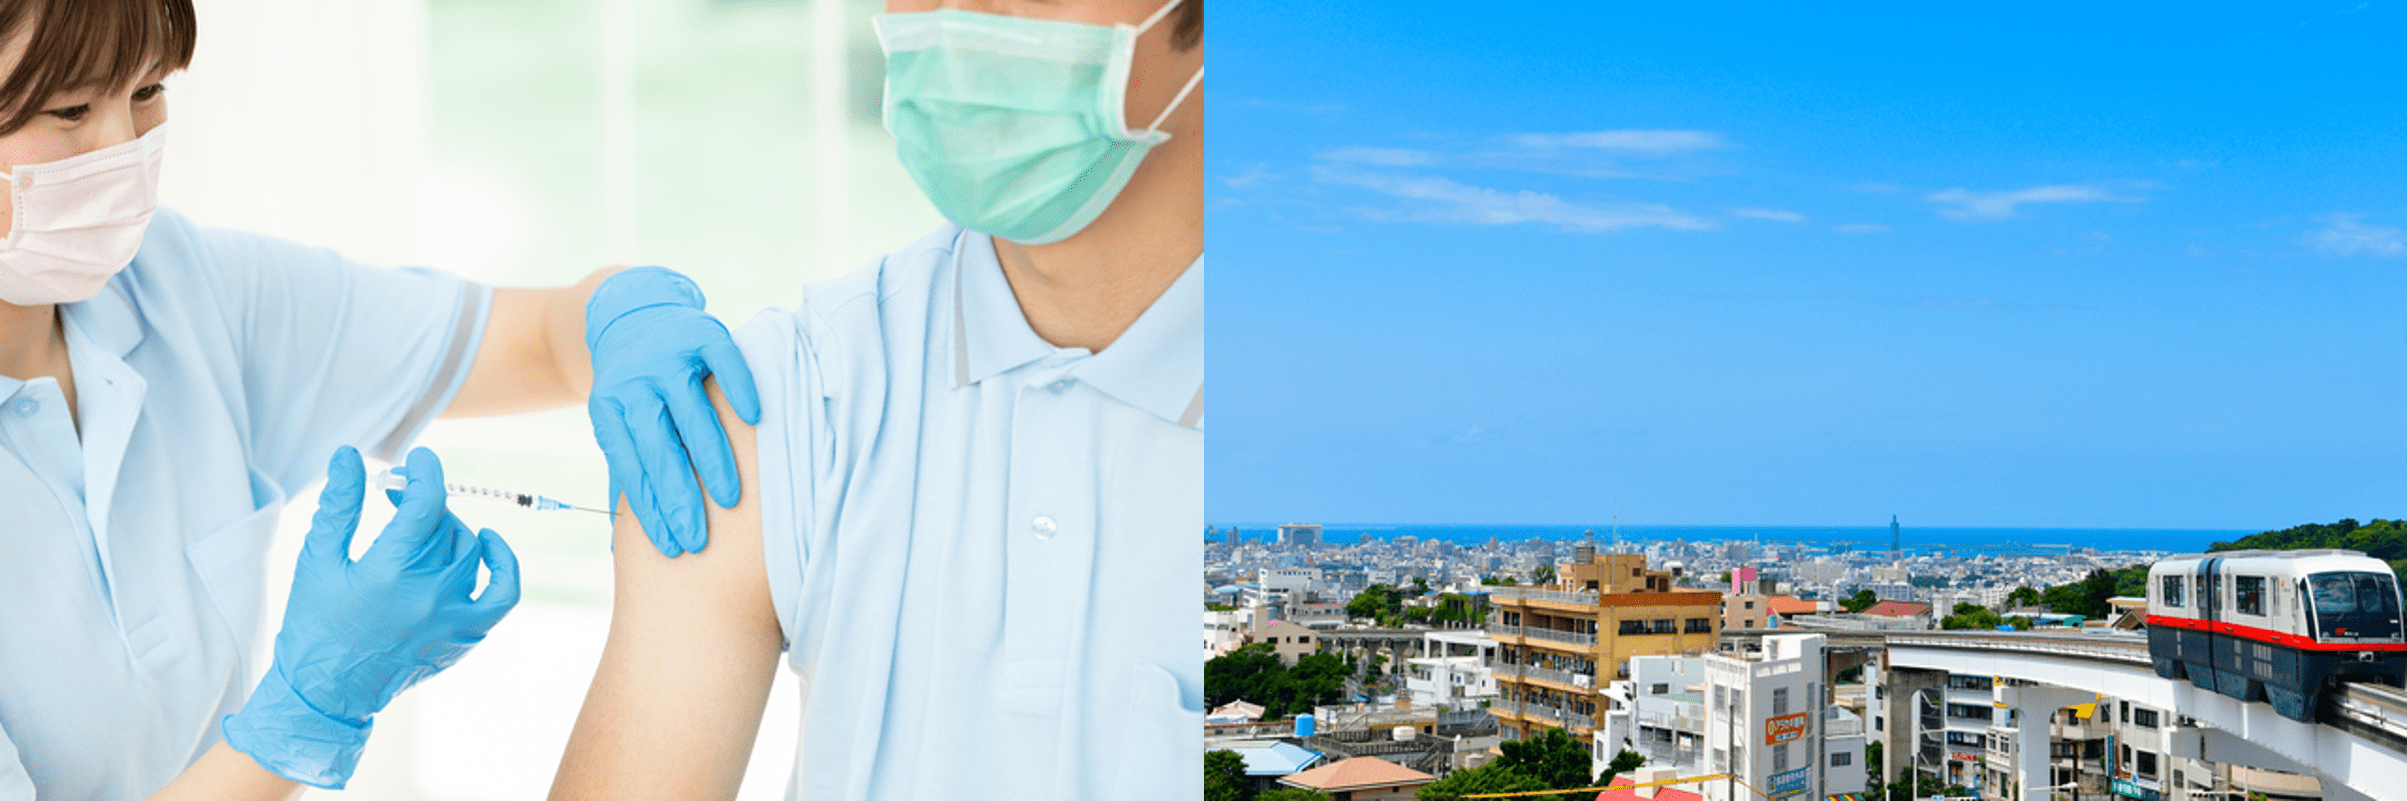 沖縄県那覇市の新型コロナワクチン接種会場で「ほすぴタッチ」が採用